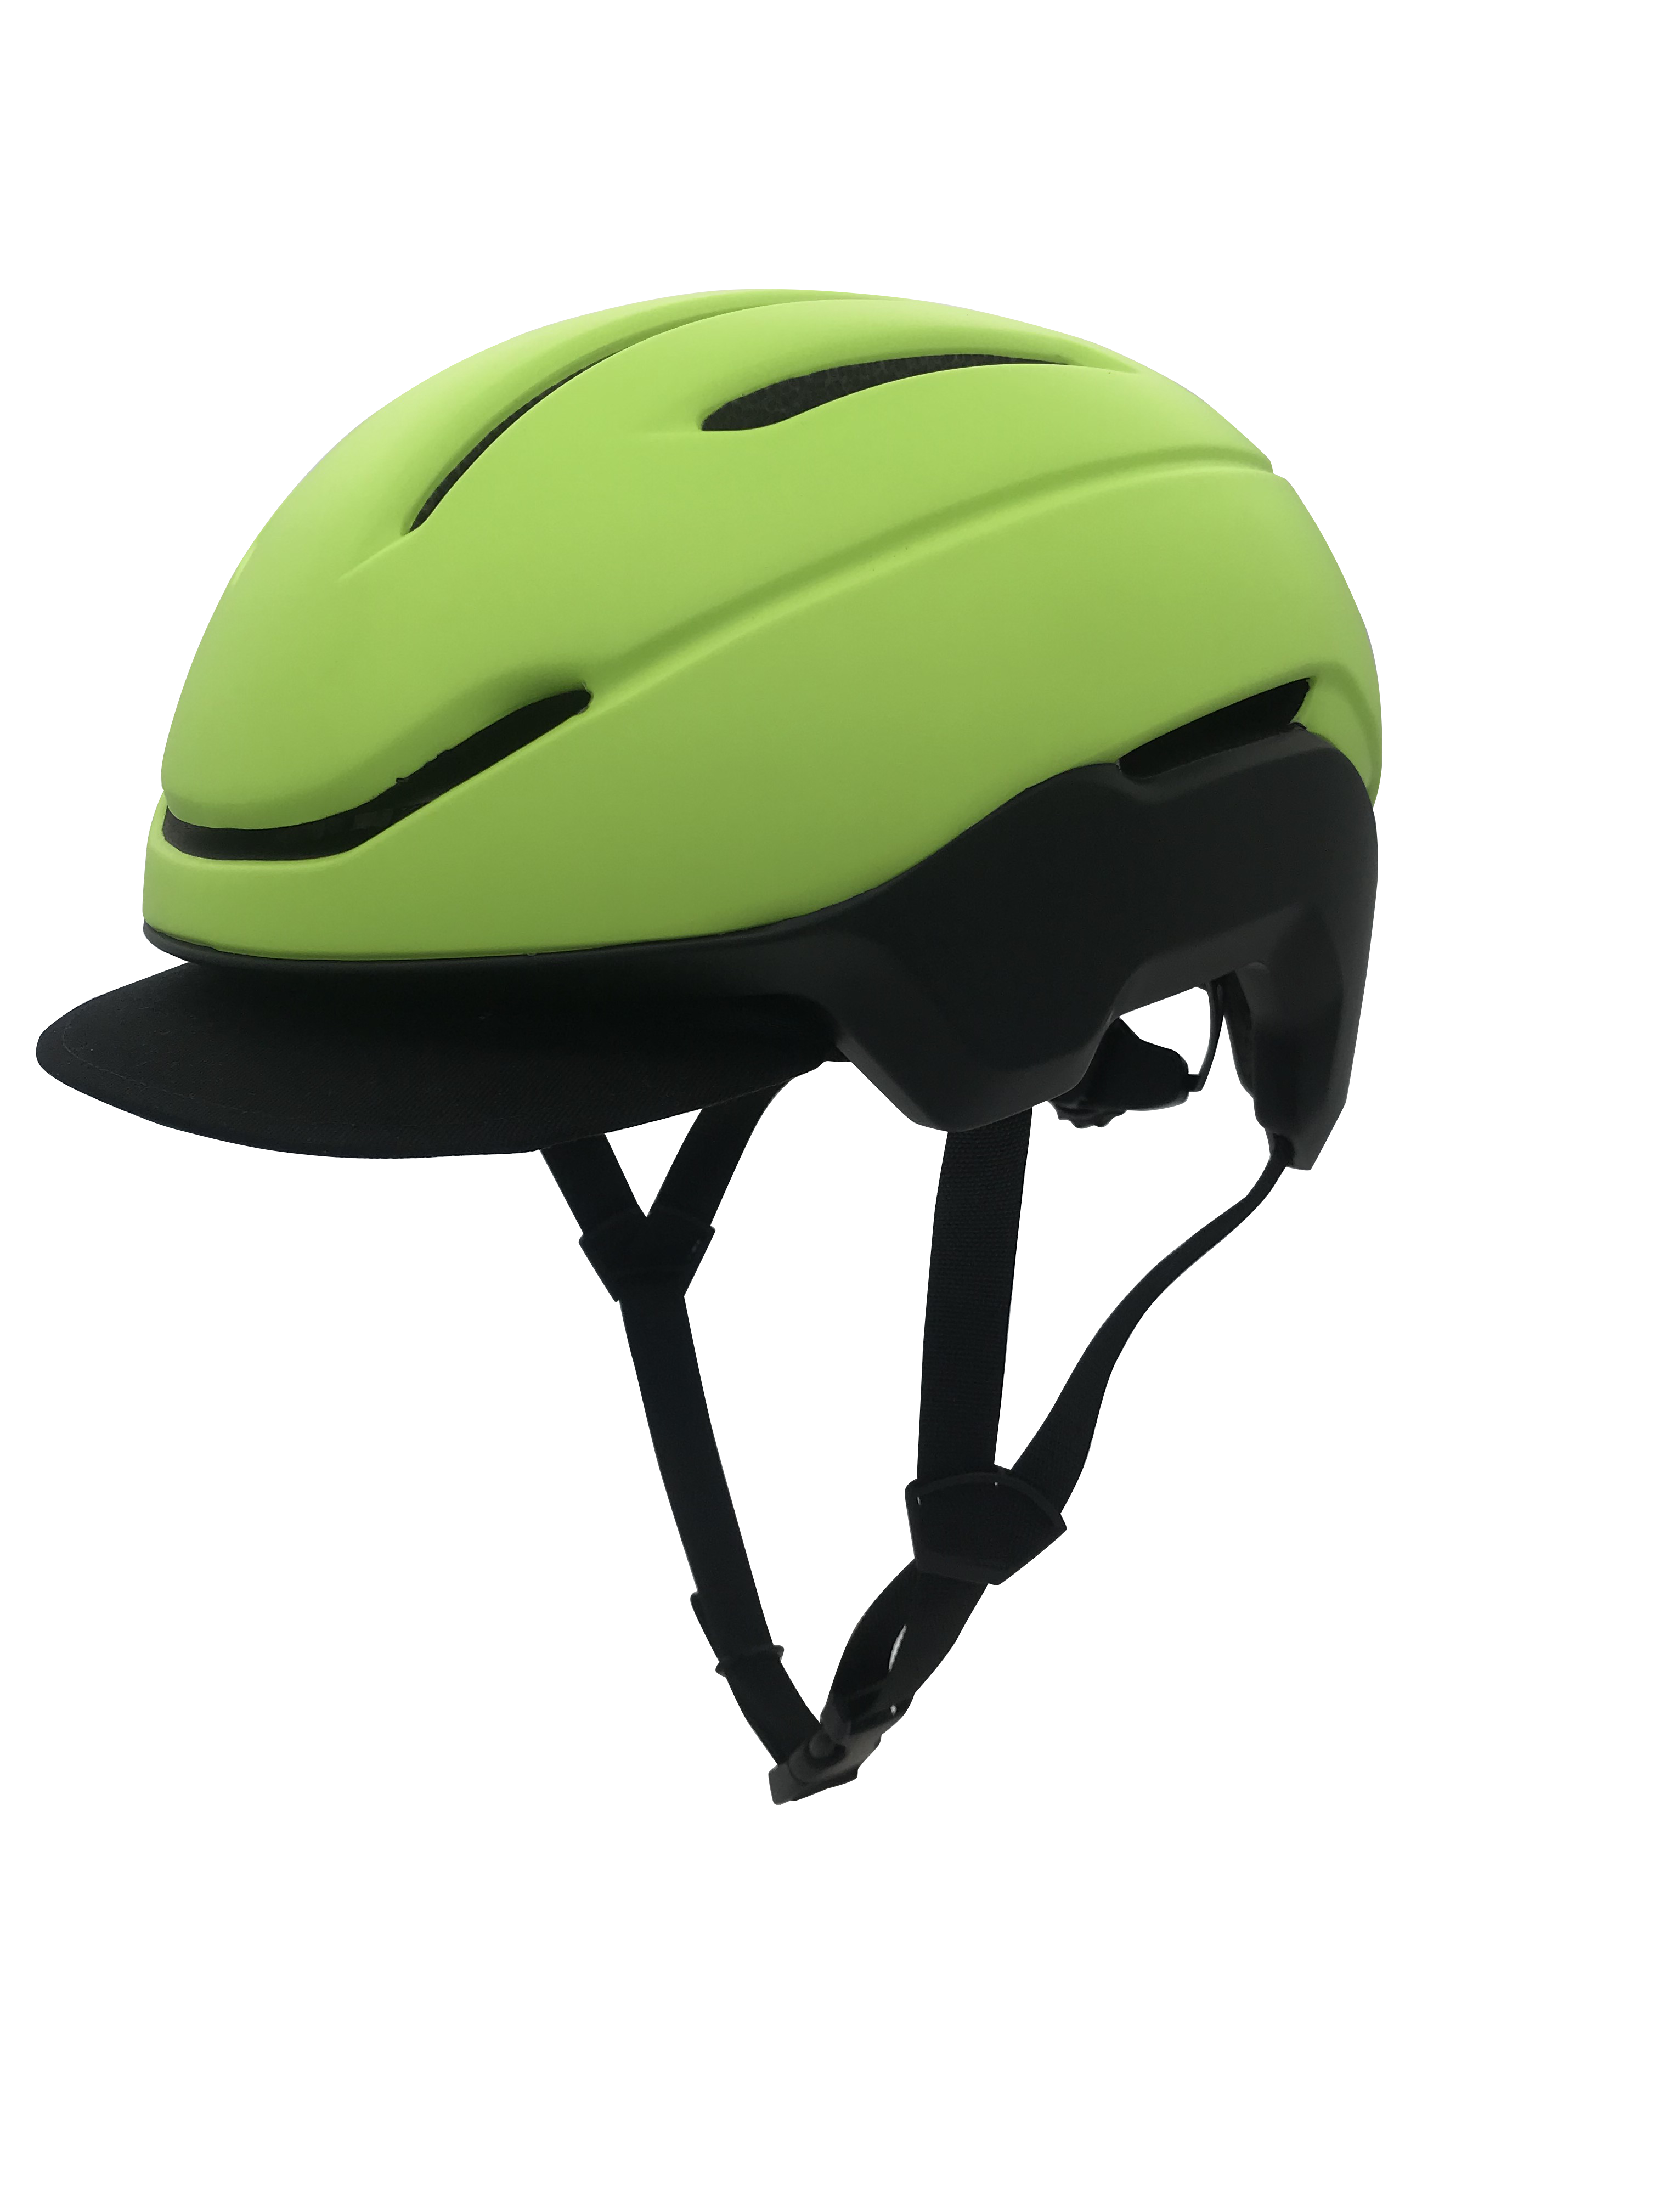 Short Lead Time for Light Up Bike Helmet - Commuter helmet VU103-Yellow – Vital